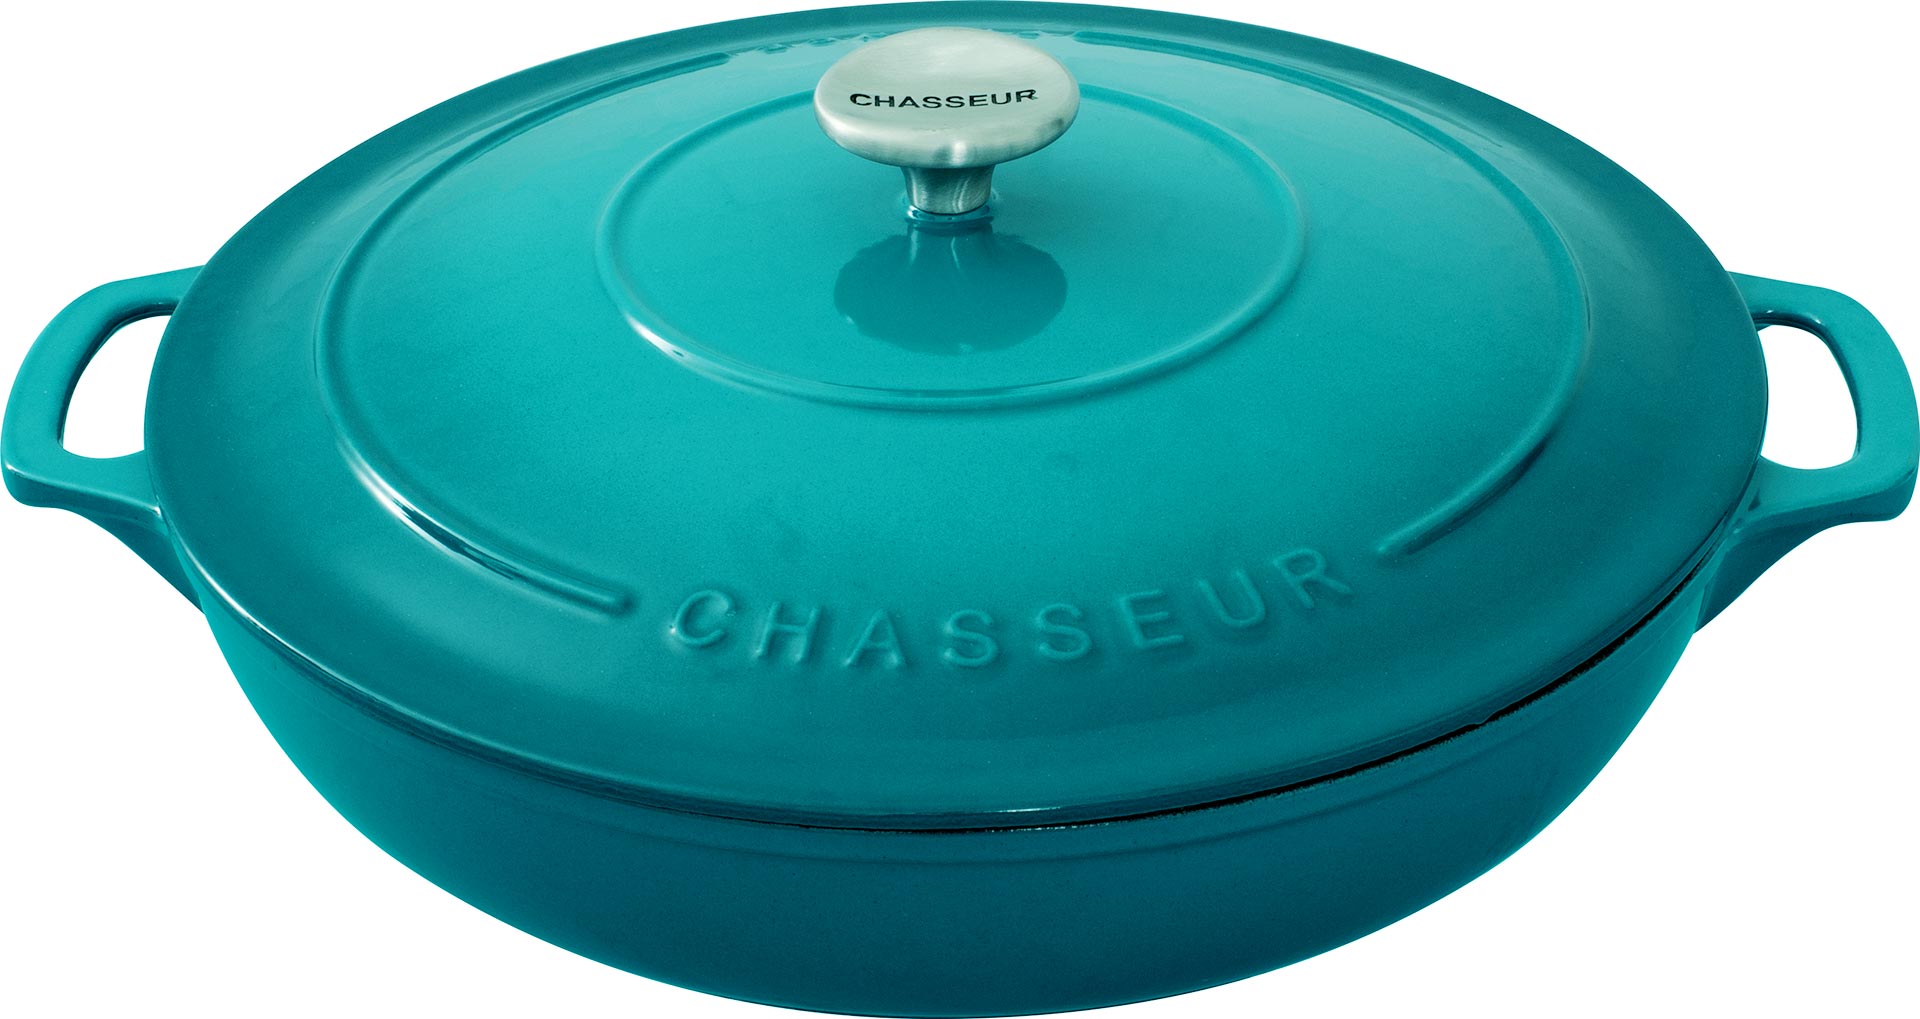 Chasseur 30cm Low Round Casserole 2.5L Shallow Cast Iron